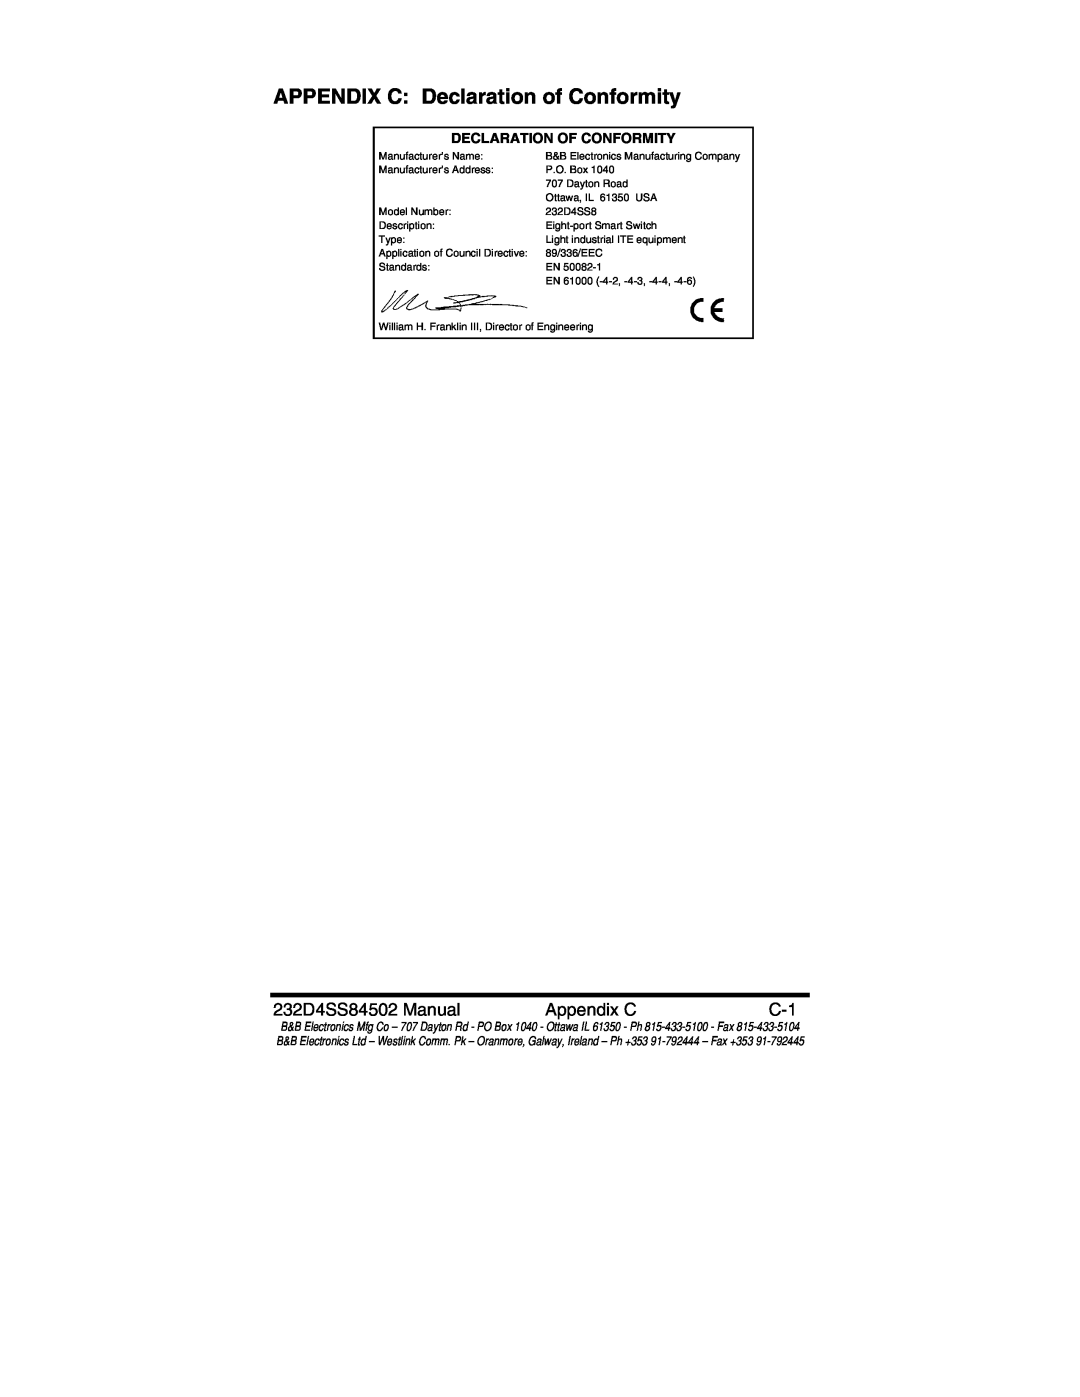 B&B Electronics manual APPENDIX C Declaration of Conformity, 232D4SS84502 Manual, Appendix C 